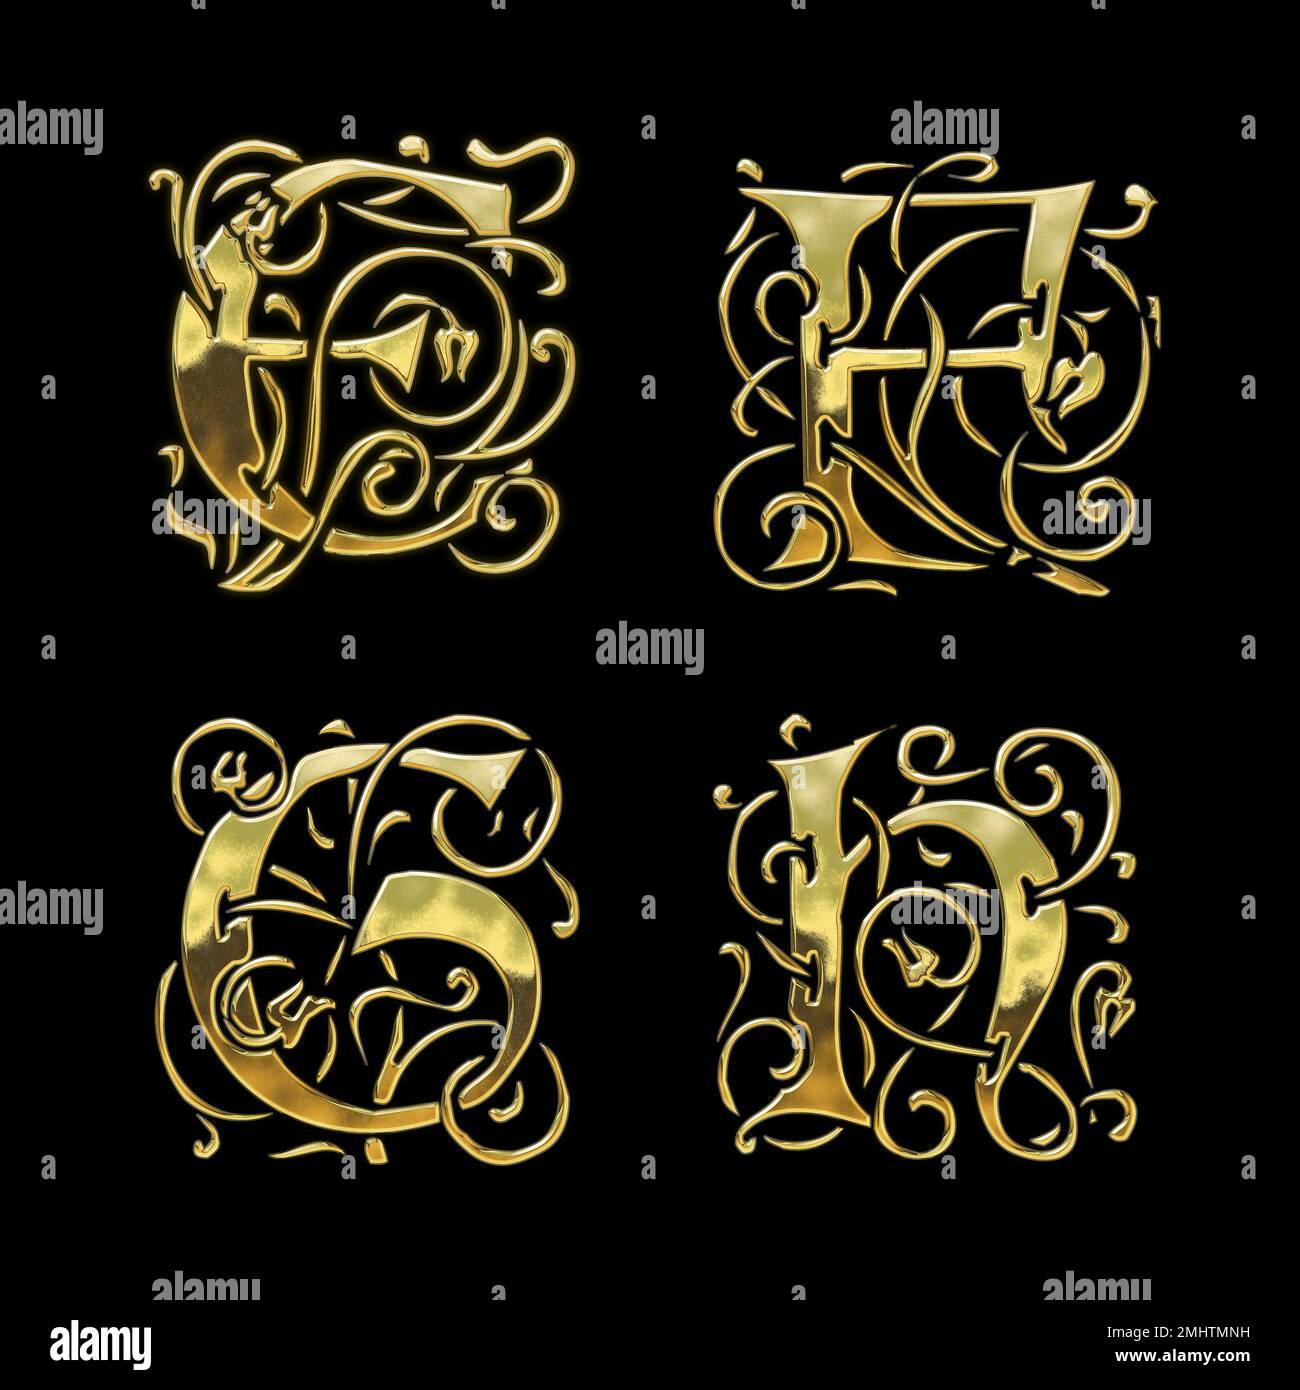 3D rendu de l'alphabet de police de style gothique doré - lettres E-H. Banque D'Images